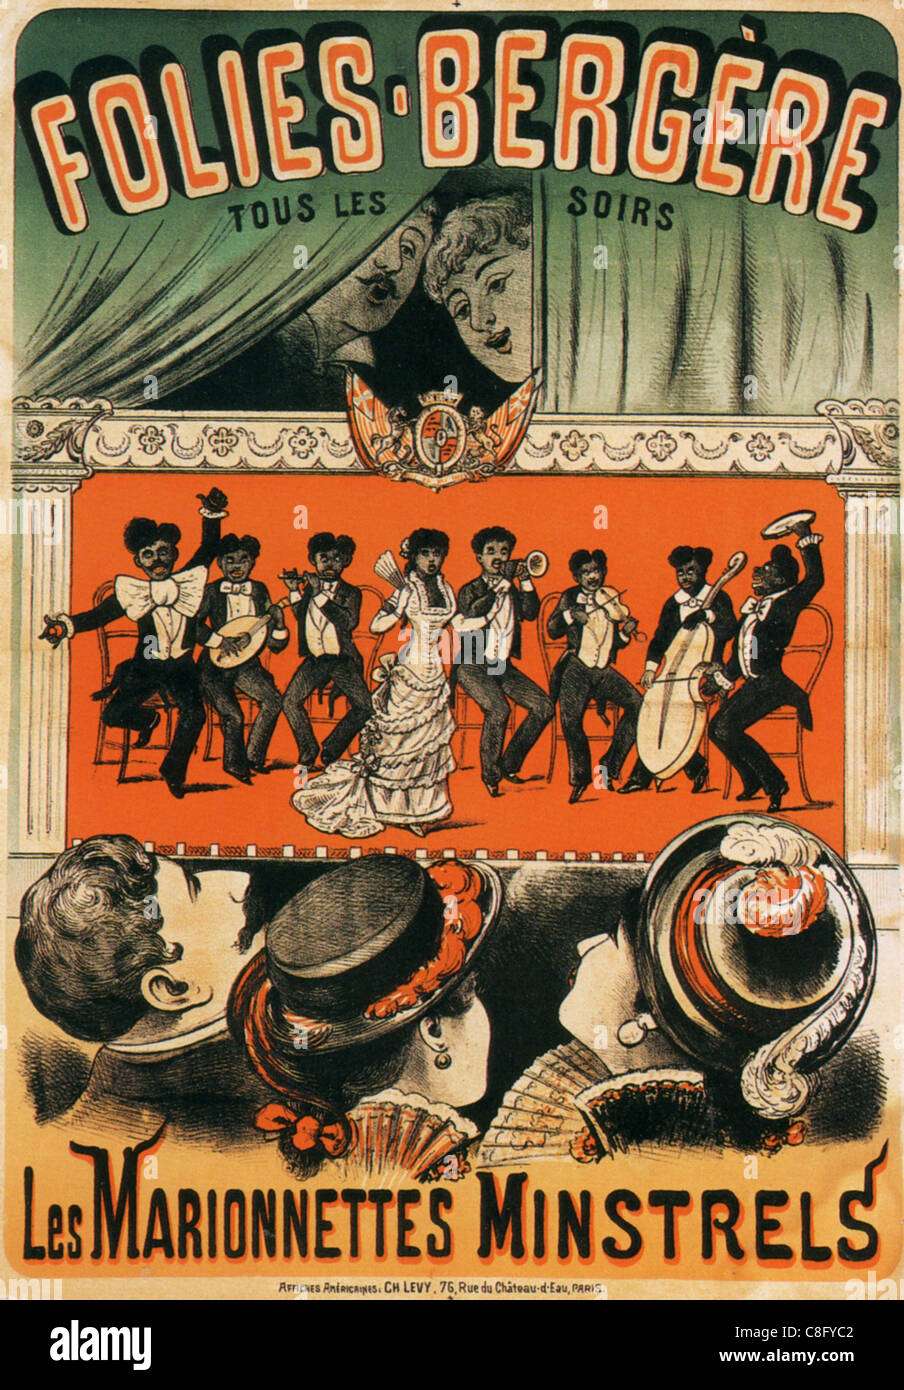 LES MARIONETTE MINSTRELS - poster Folies-Bergeres annuncio circa 1890 per menestrello marionette Foto Stock